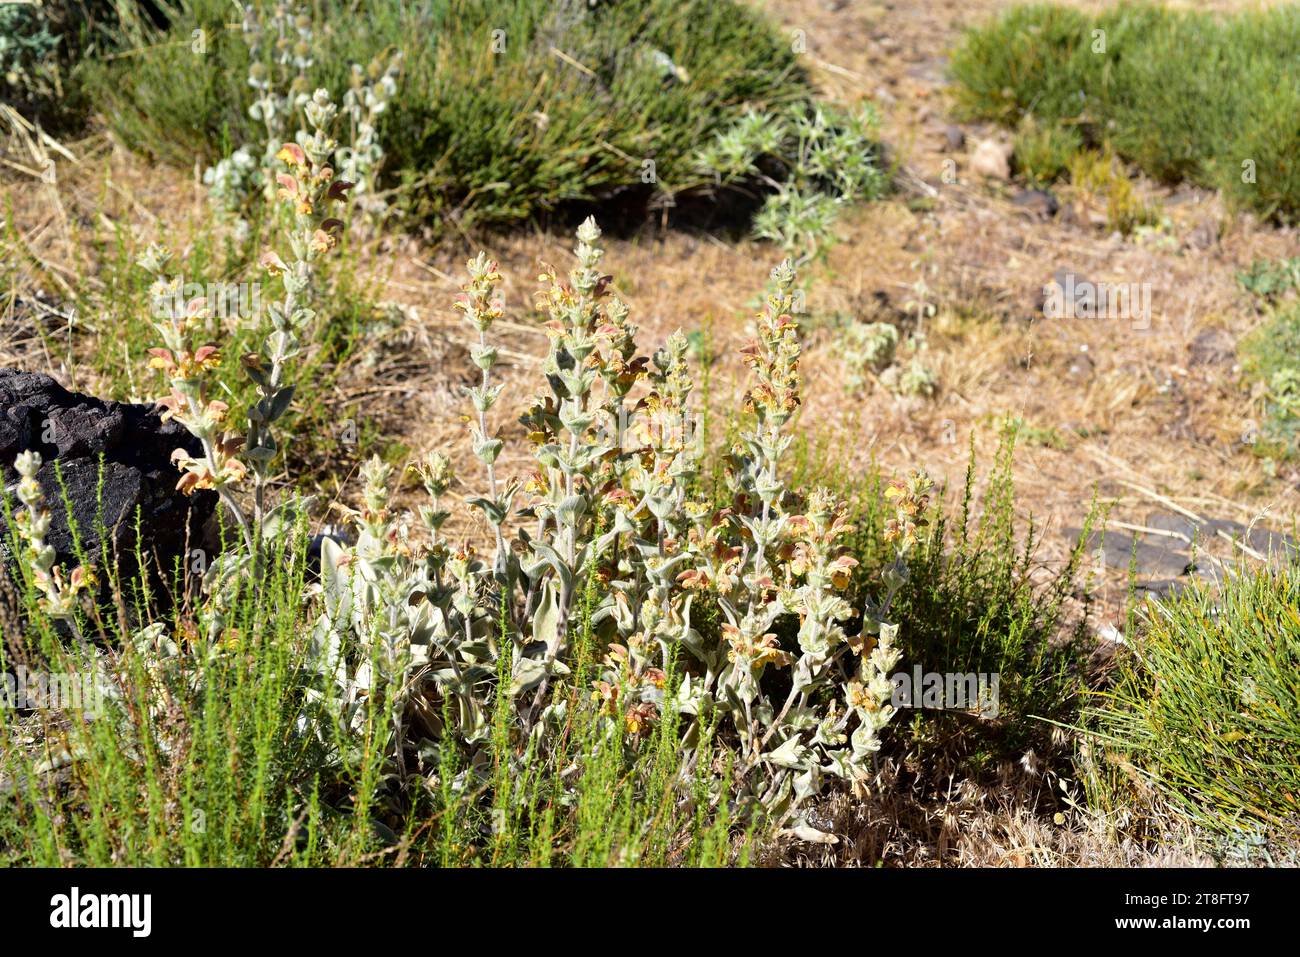 Barba de macho (Phlomis crinita malacitana) ist eine mehrjährige Pflanze, die in den Bergen Südandalusiens endemisch ist. Dieses Foto wurde in Sierra Nevada, Grana, aufgenommen Stockfoto